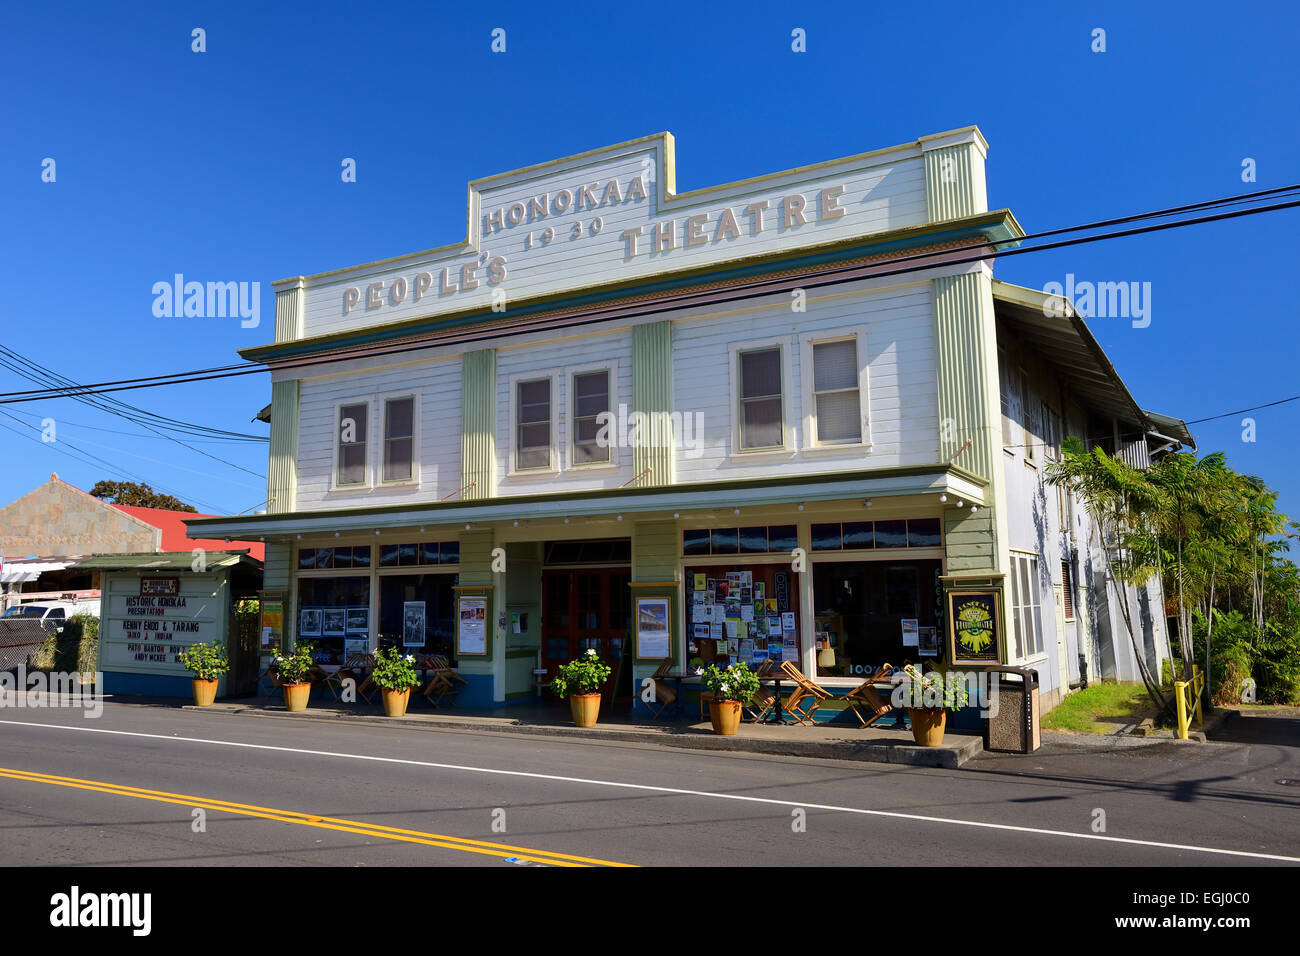 Honokaa People's Theatre de la rue principale de la vieille ville historique de sucre sur Honokaa Hamakua Coast, Big Island, Hawaii, USA Banque D'Images